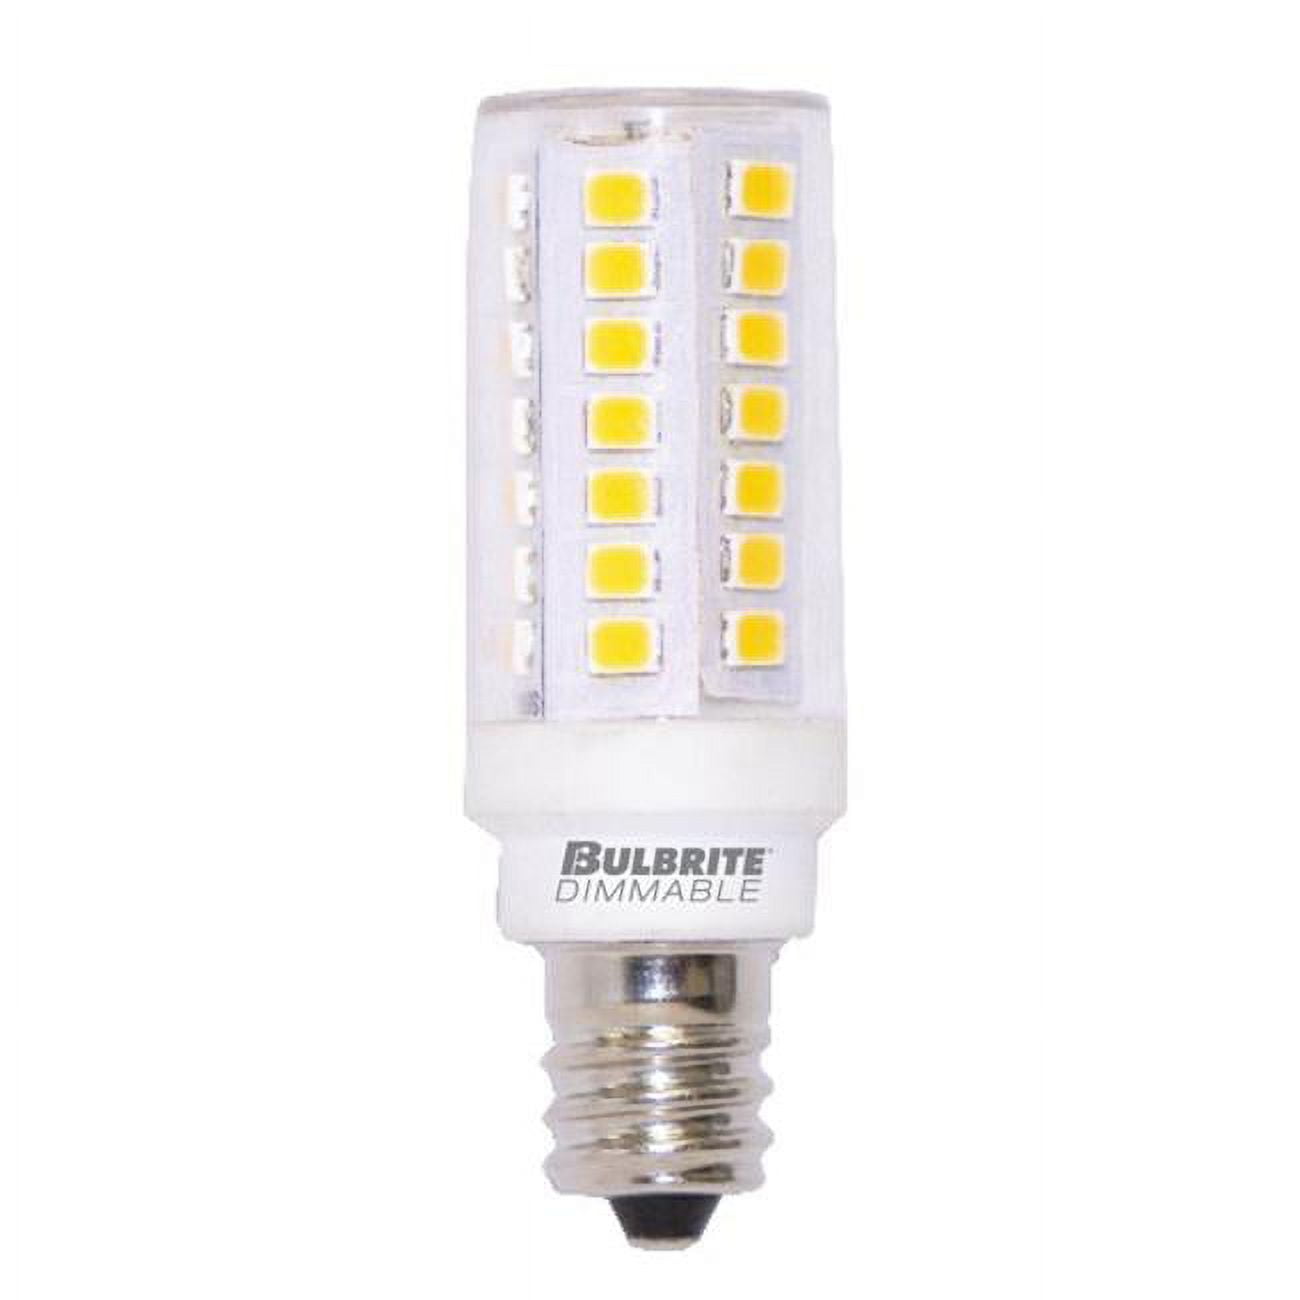 Picture of Bulbrite Pack of (2) 5 Watt 120V Dimmable Clear T6 LED Mini Light Bulbs with Mini-Candelabra (E11) Base  3000K Soft White Light  550 Lumens